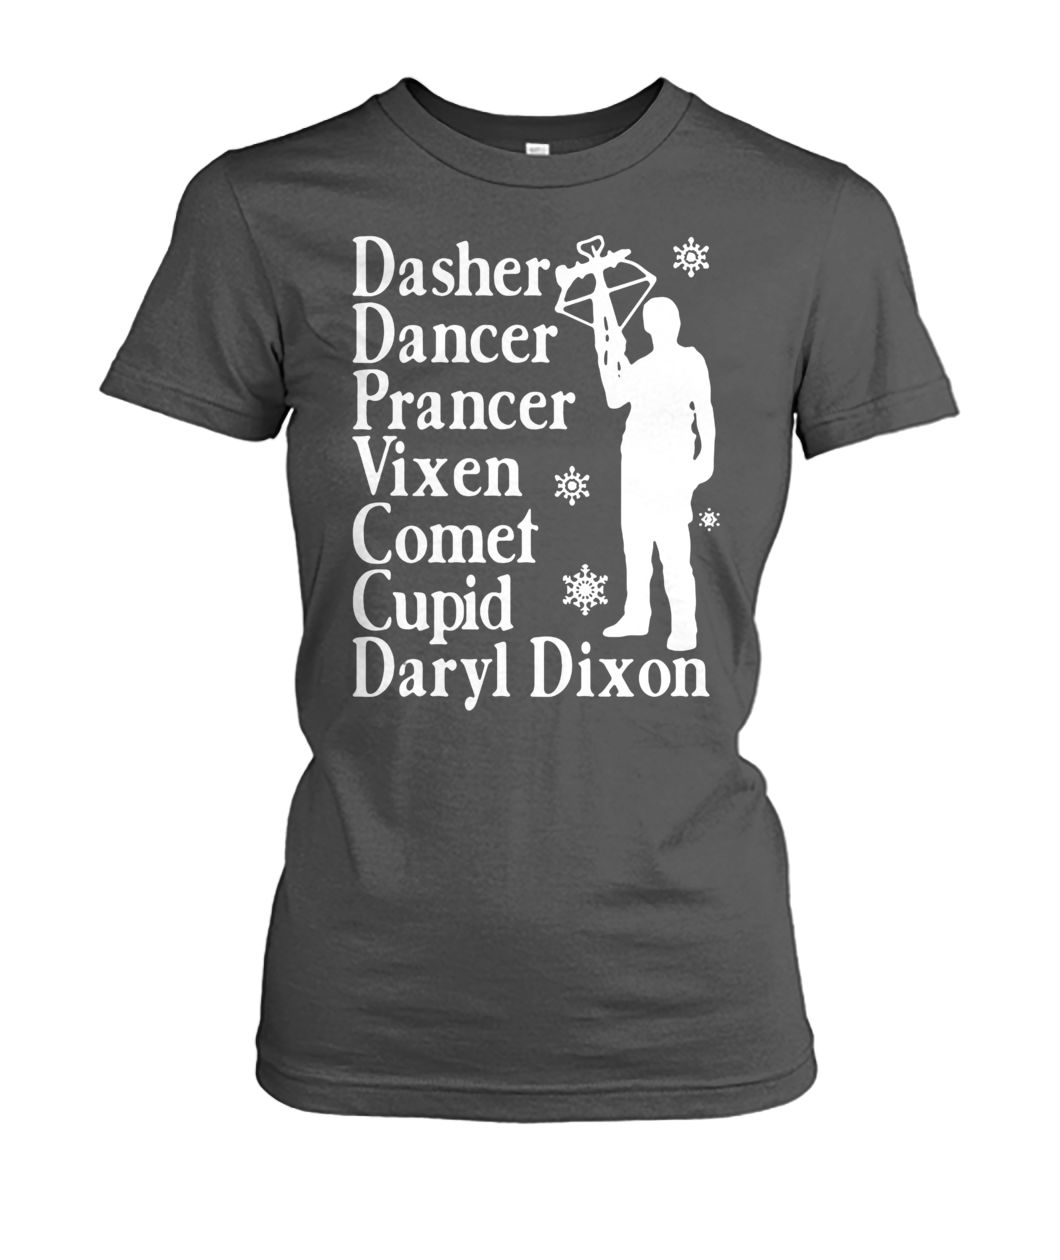 Dasher dancers prancer vixen comet cupid daryl dixon women's crew tee